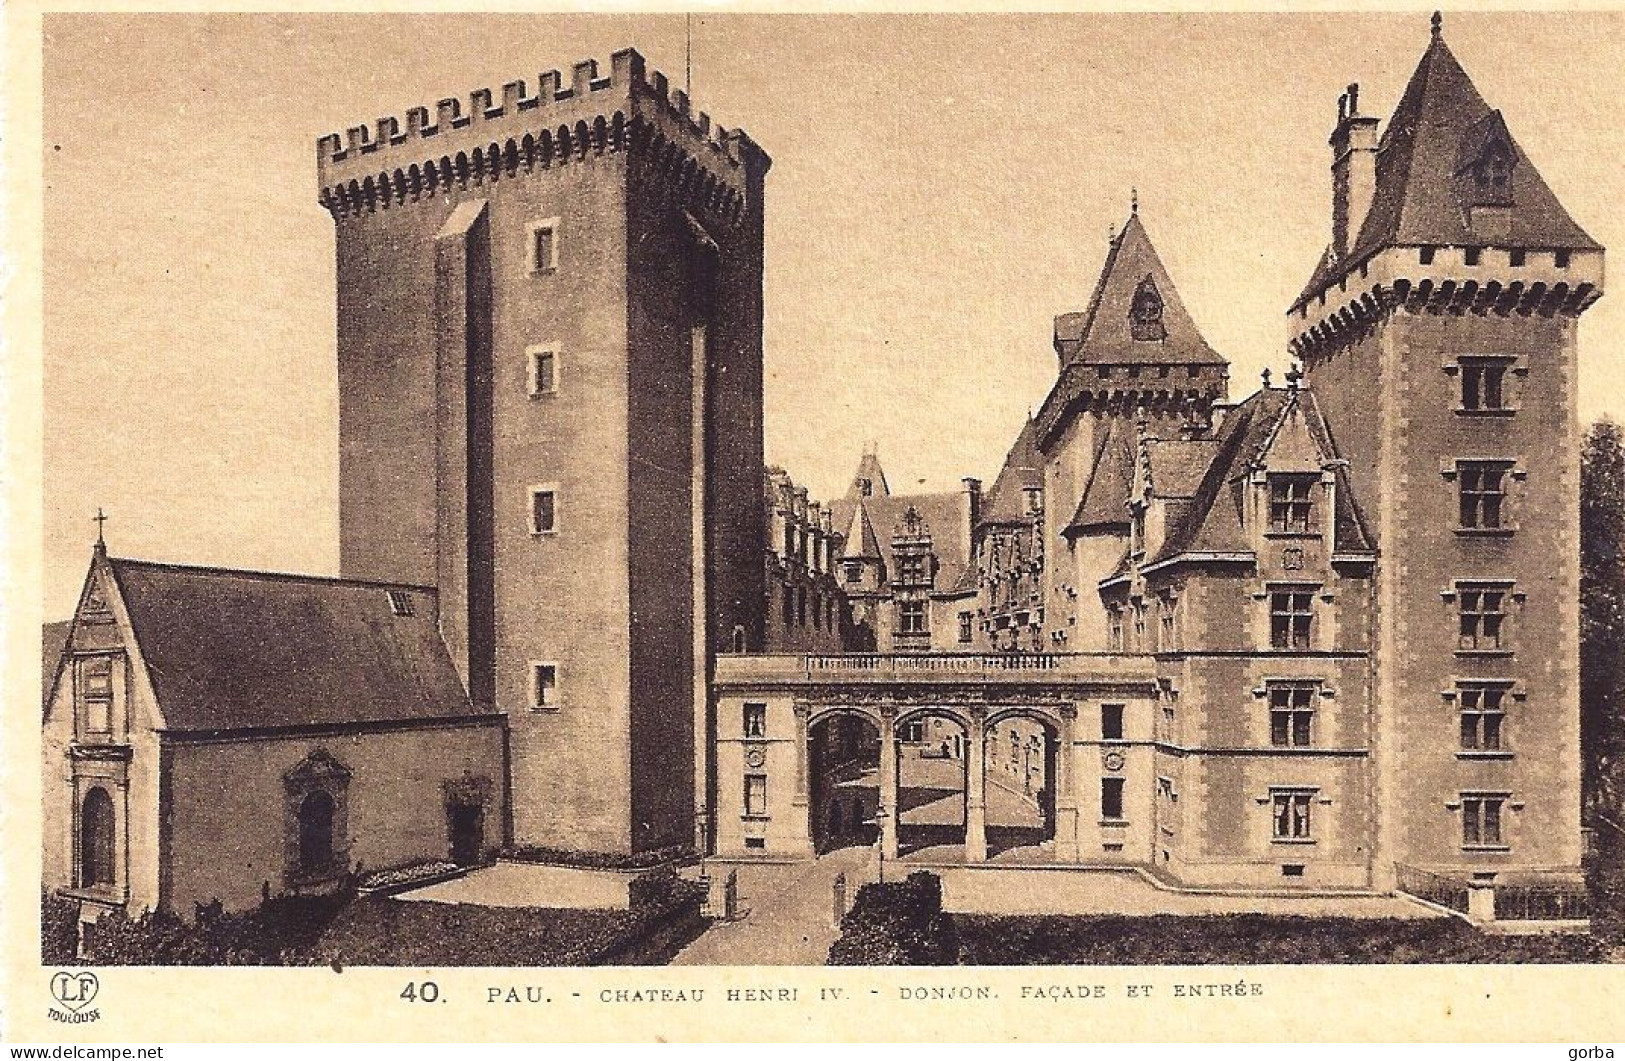 *Lot de 24 CPA  - 64 - PAU - le château Henri IV (Possibilité de vente au détail 4.50€ la carte)